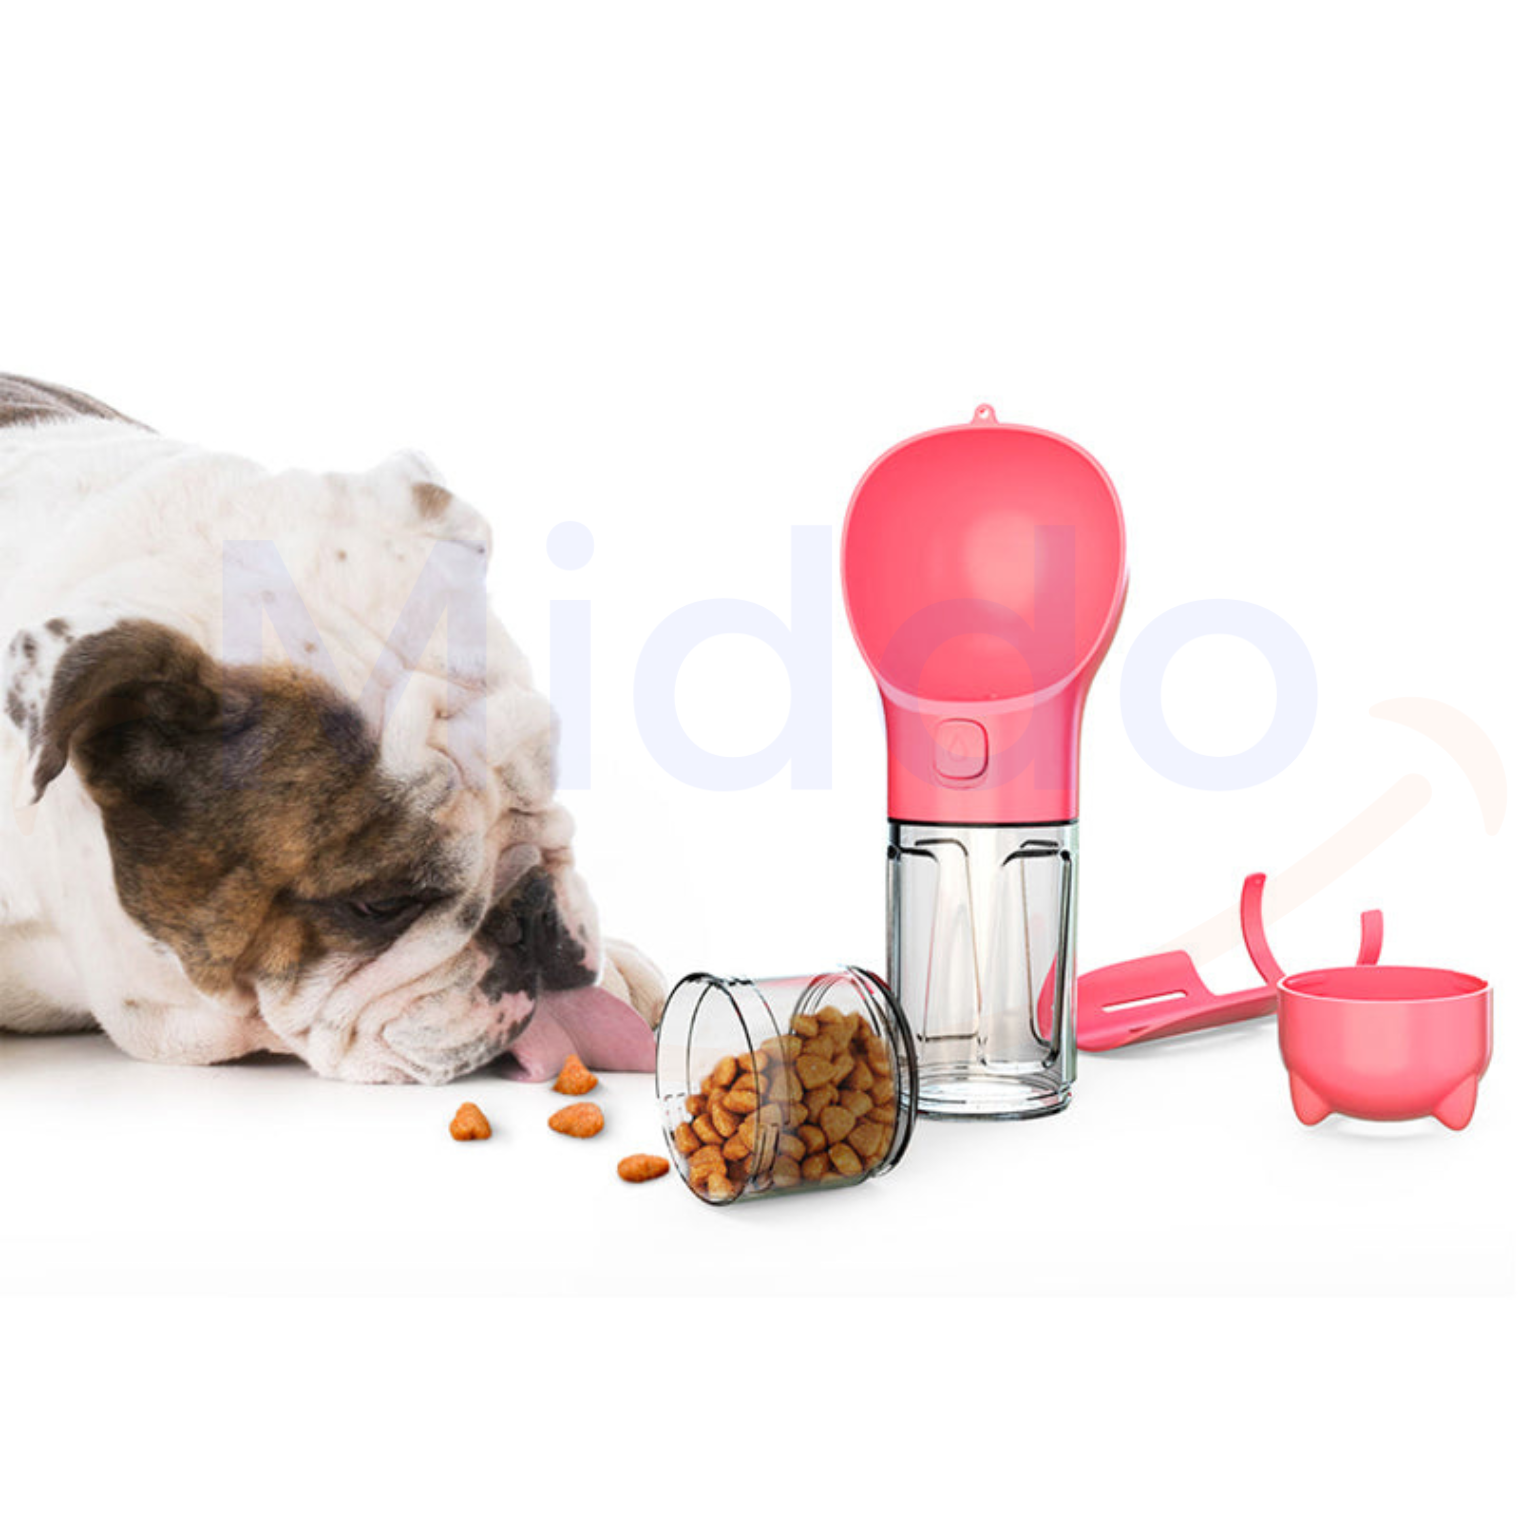 Roze FurryFeeder met bulldog en voer